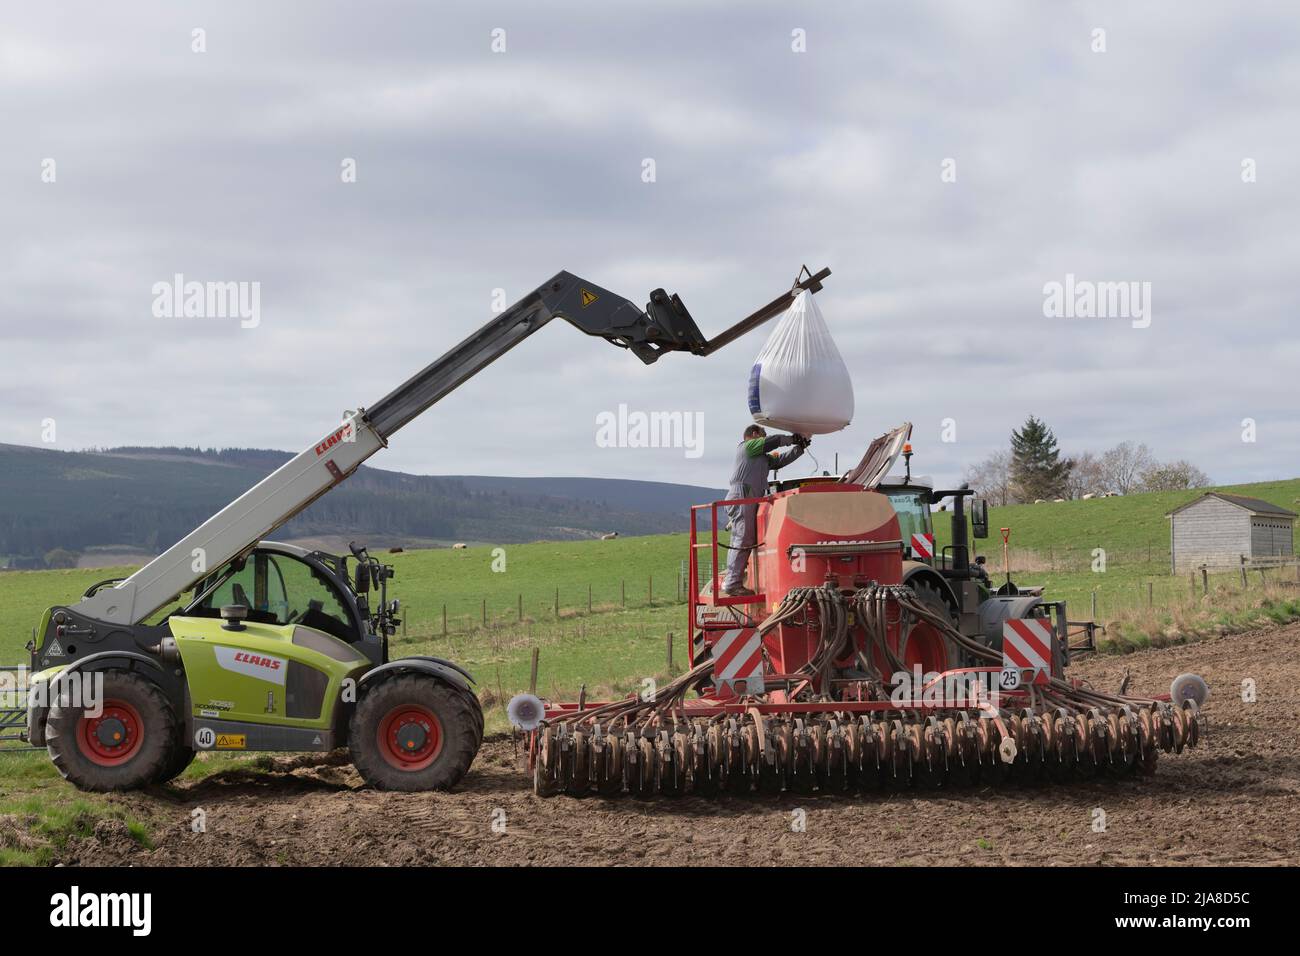 Ein Landwirt füllt einen Horsch Universal Seed Drill aus einem Sack Samen eines Händlers, der von einem Claas Telehandler in einem gepflügten Feld aufgehängt wird Stockfoto